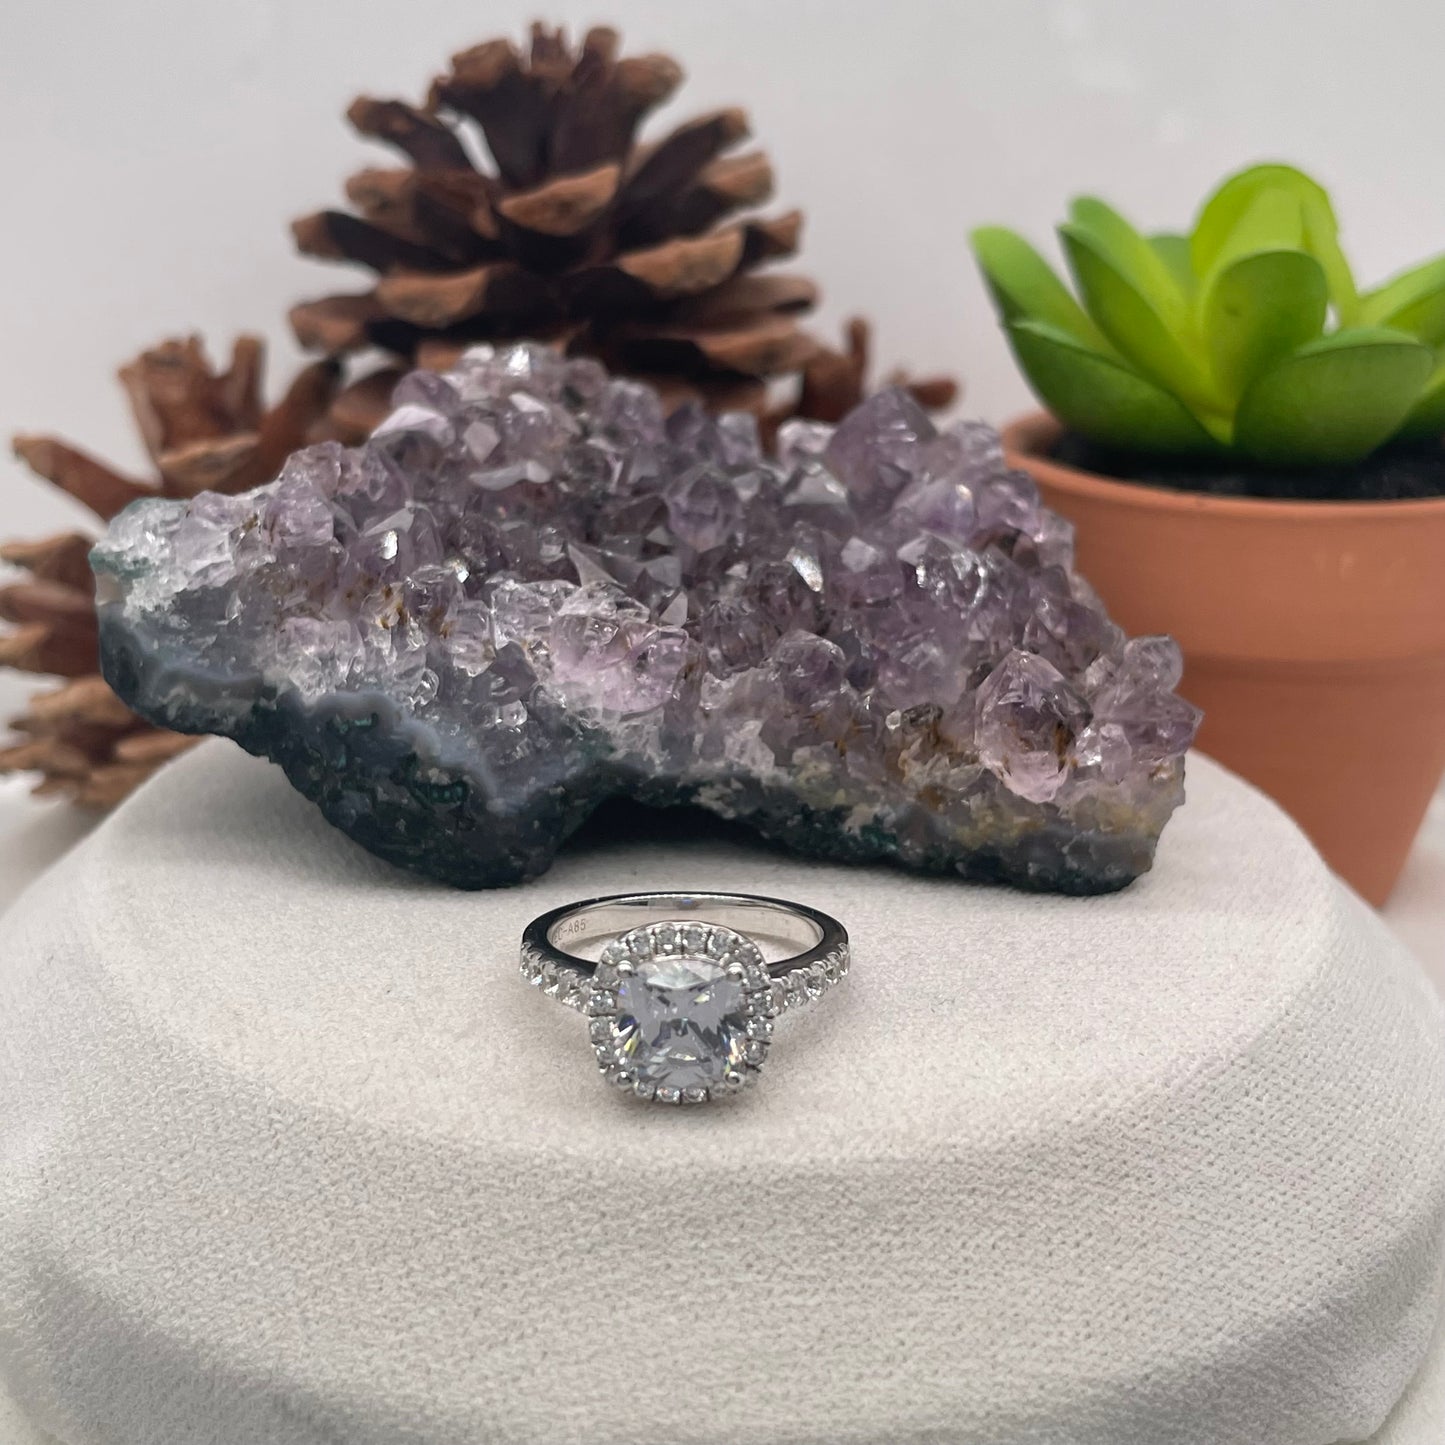 1.46 Carat Round Brilliant Lab Created / Naturel Diamond Engagement Ring